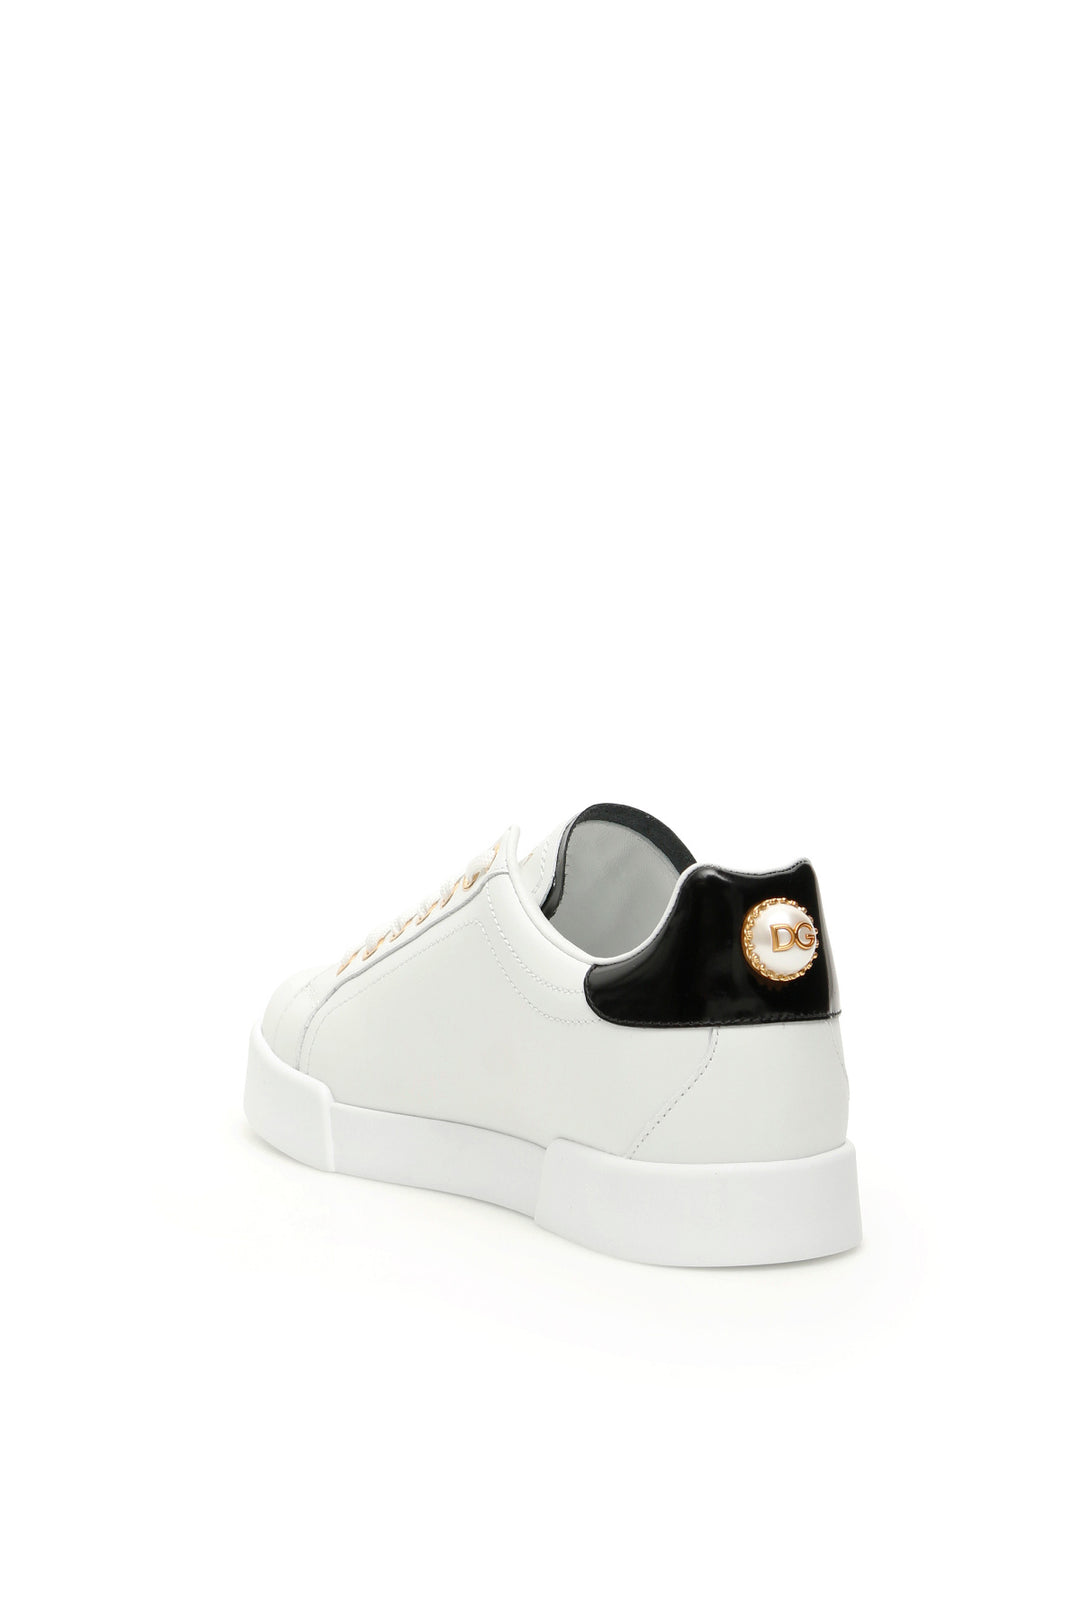 Dolce & Gabbana Portofino Sneakers With Pearl   Bianco